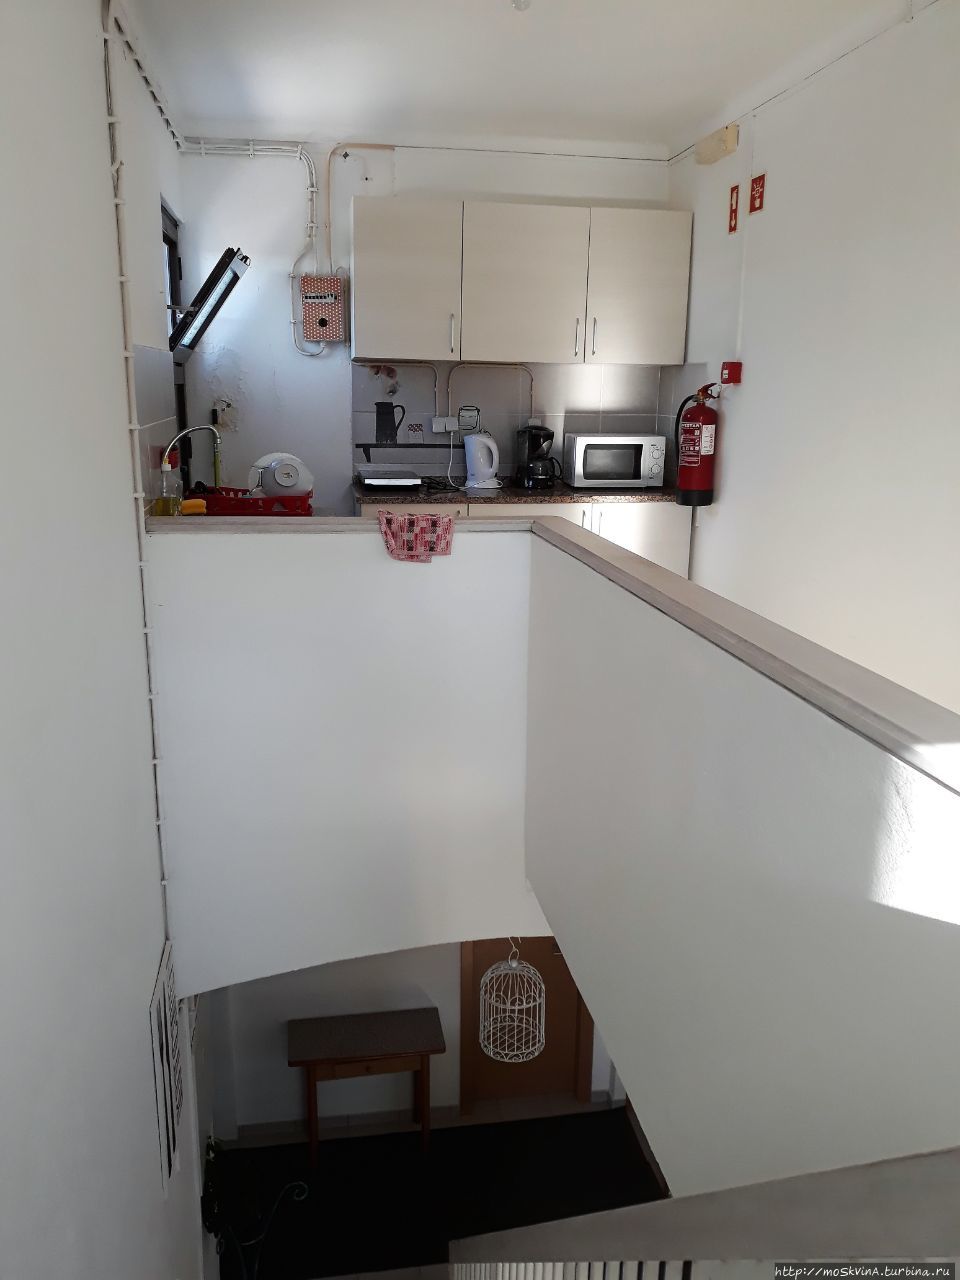 Переход от номера в отеле на кухню для приготовления пищи Албуфейра, Португалия